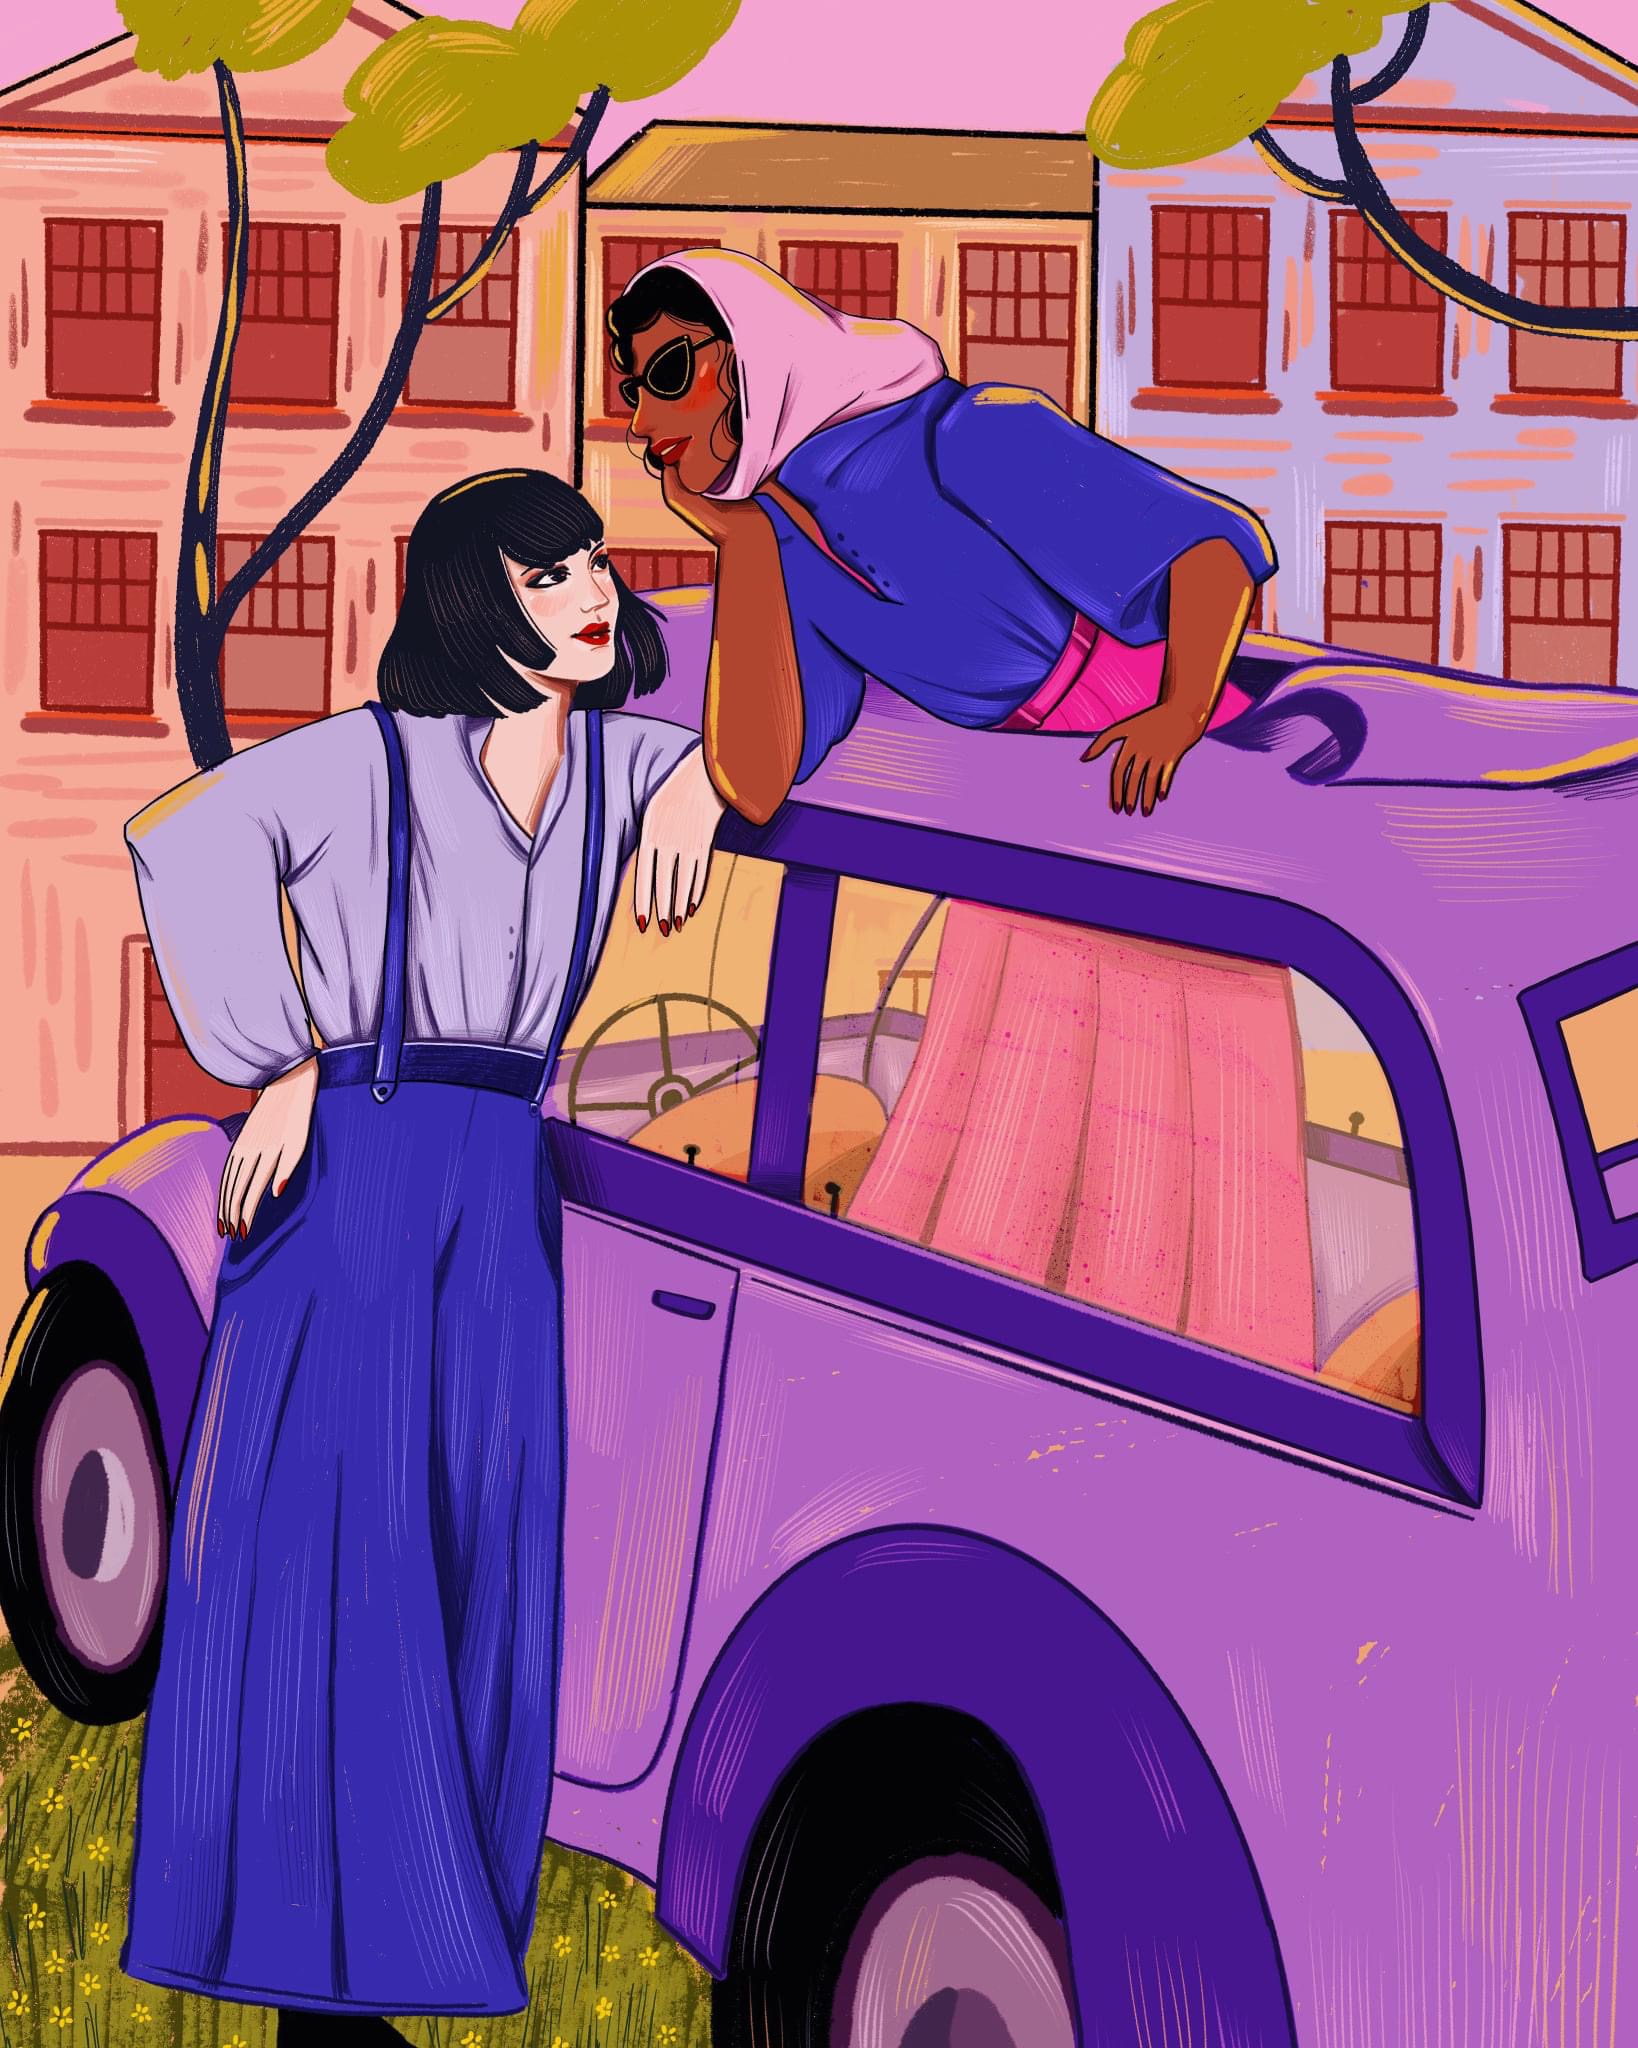 yanna zosmer ilustratie doua femei care stau de vorba in masina